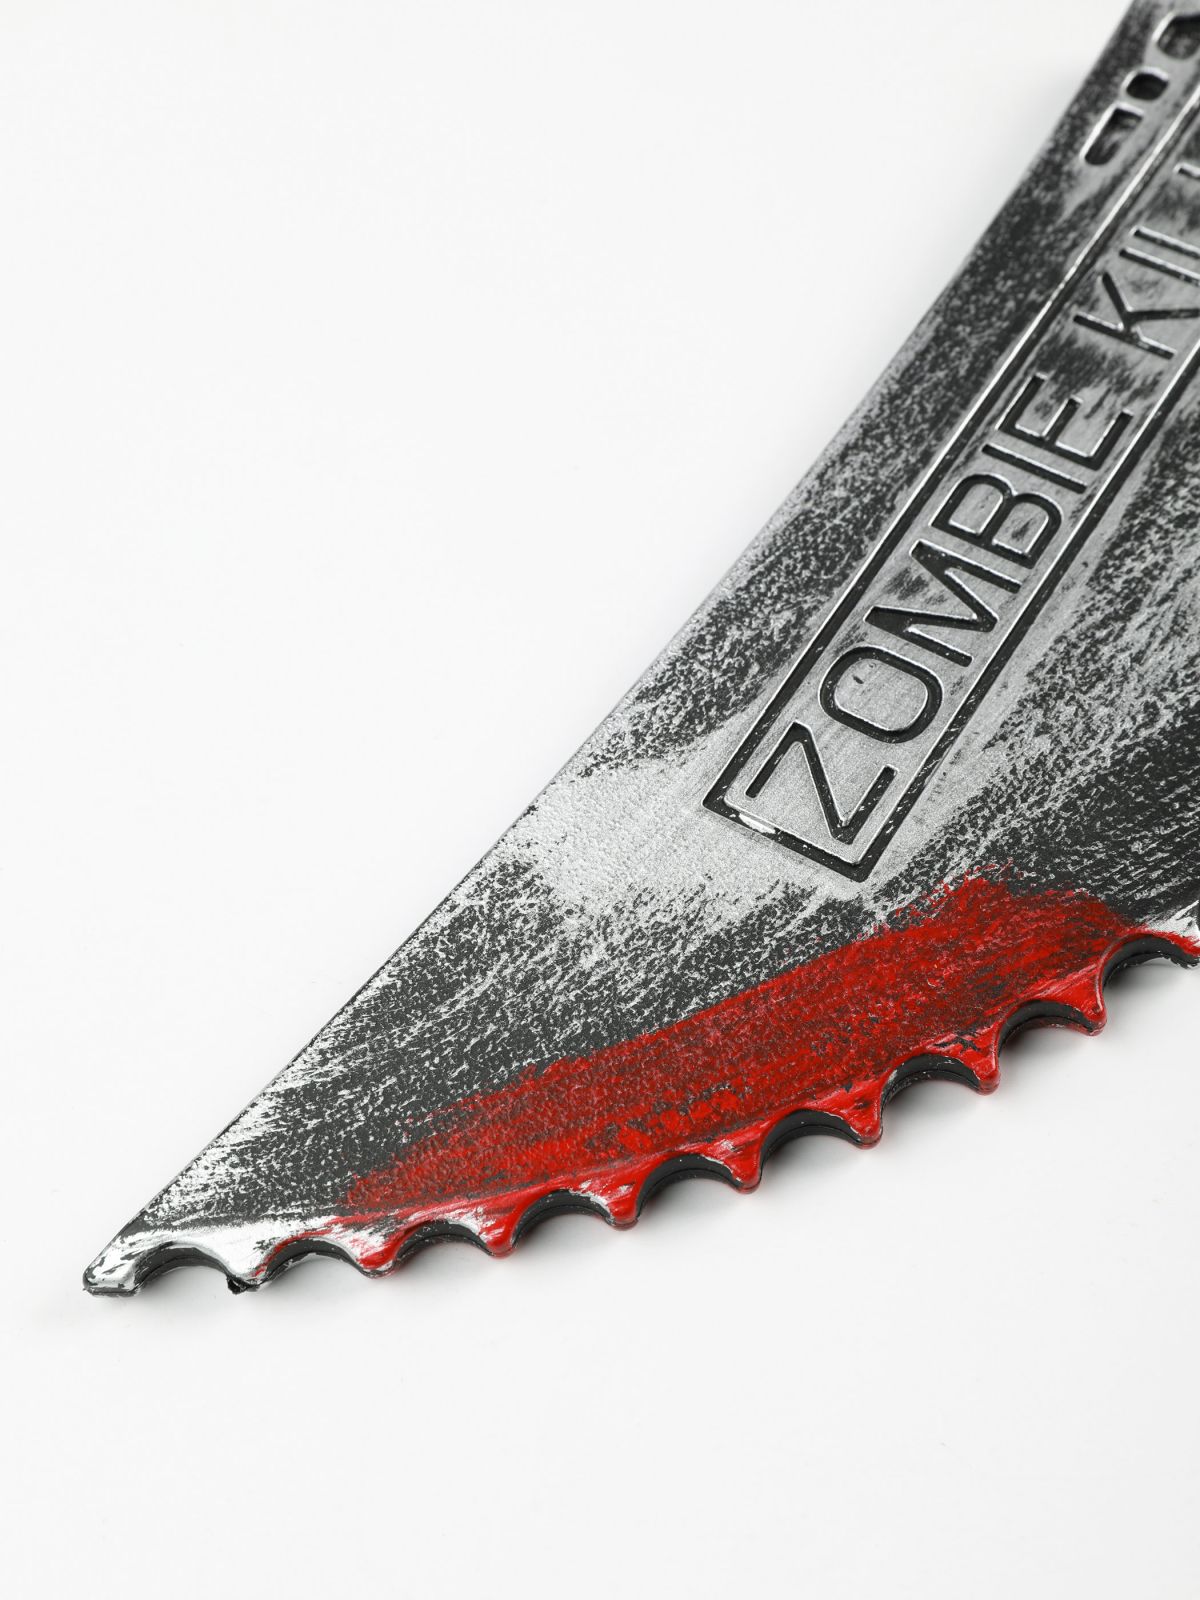  סכין לתחפושת זומבי / Purim Collection של SHOSHI ZOHAR